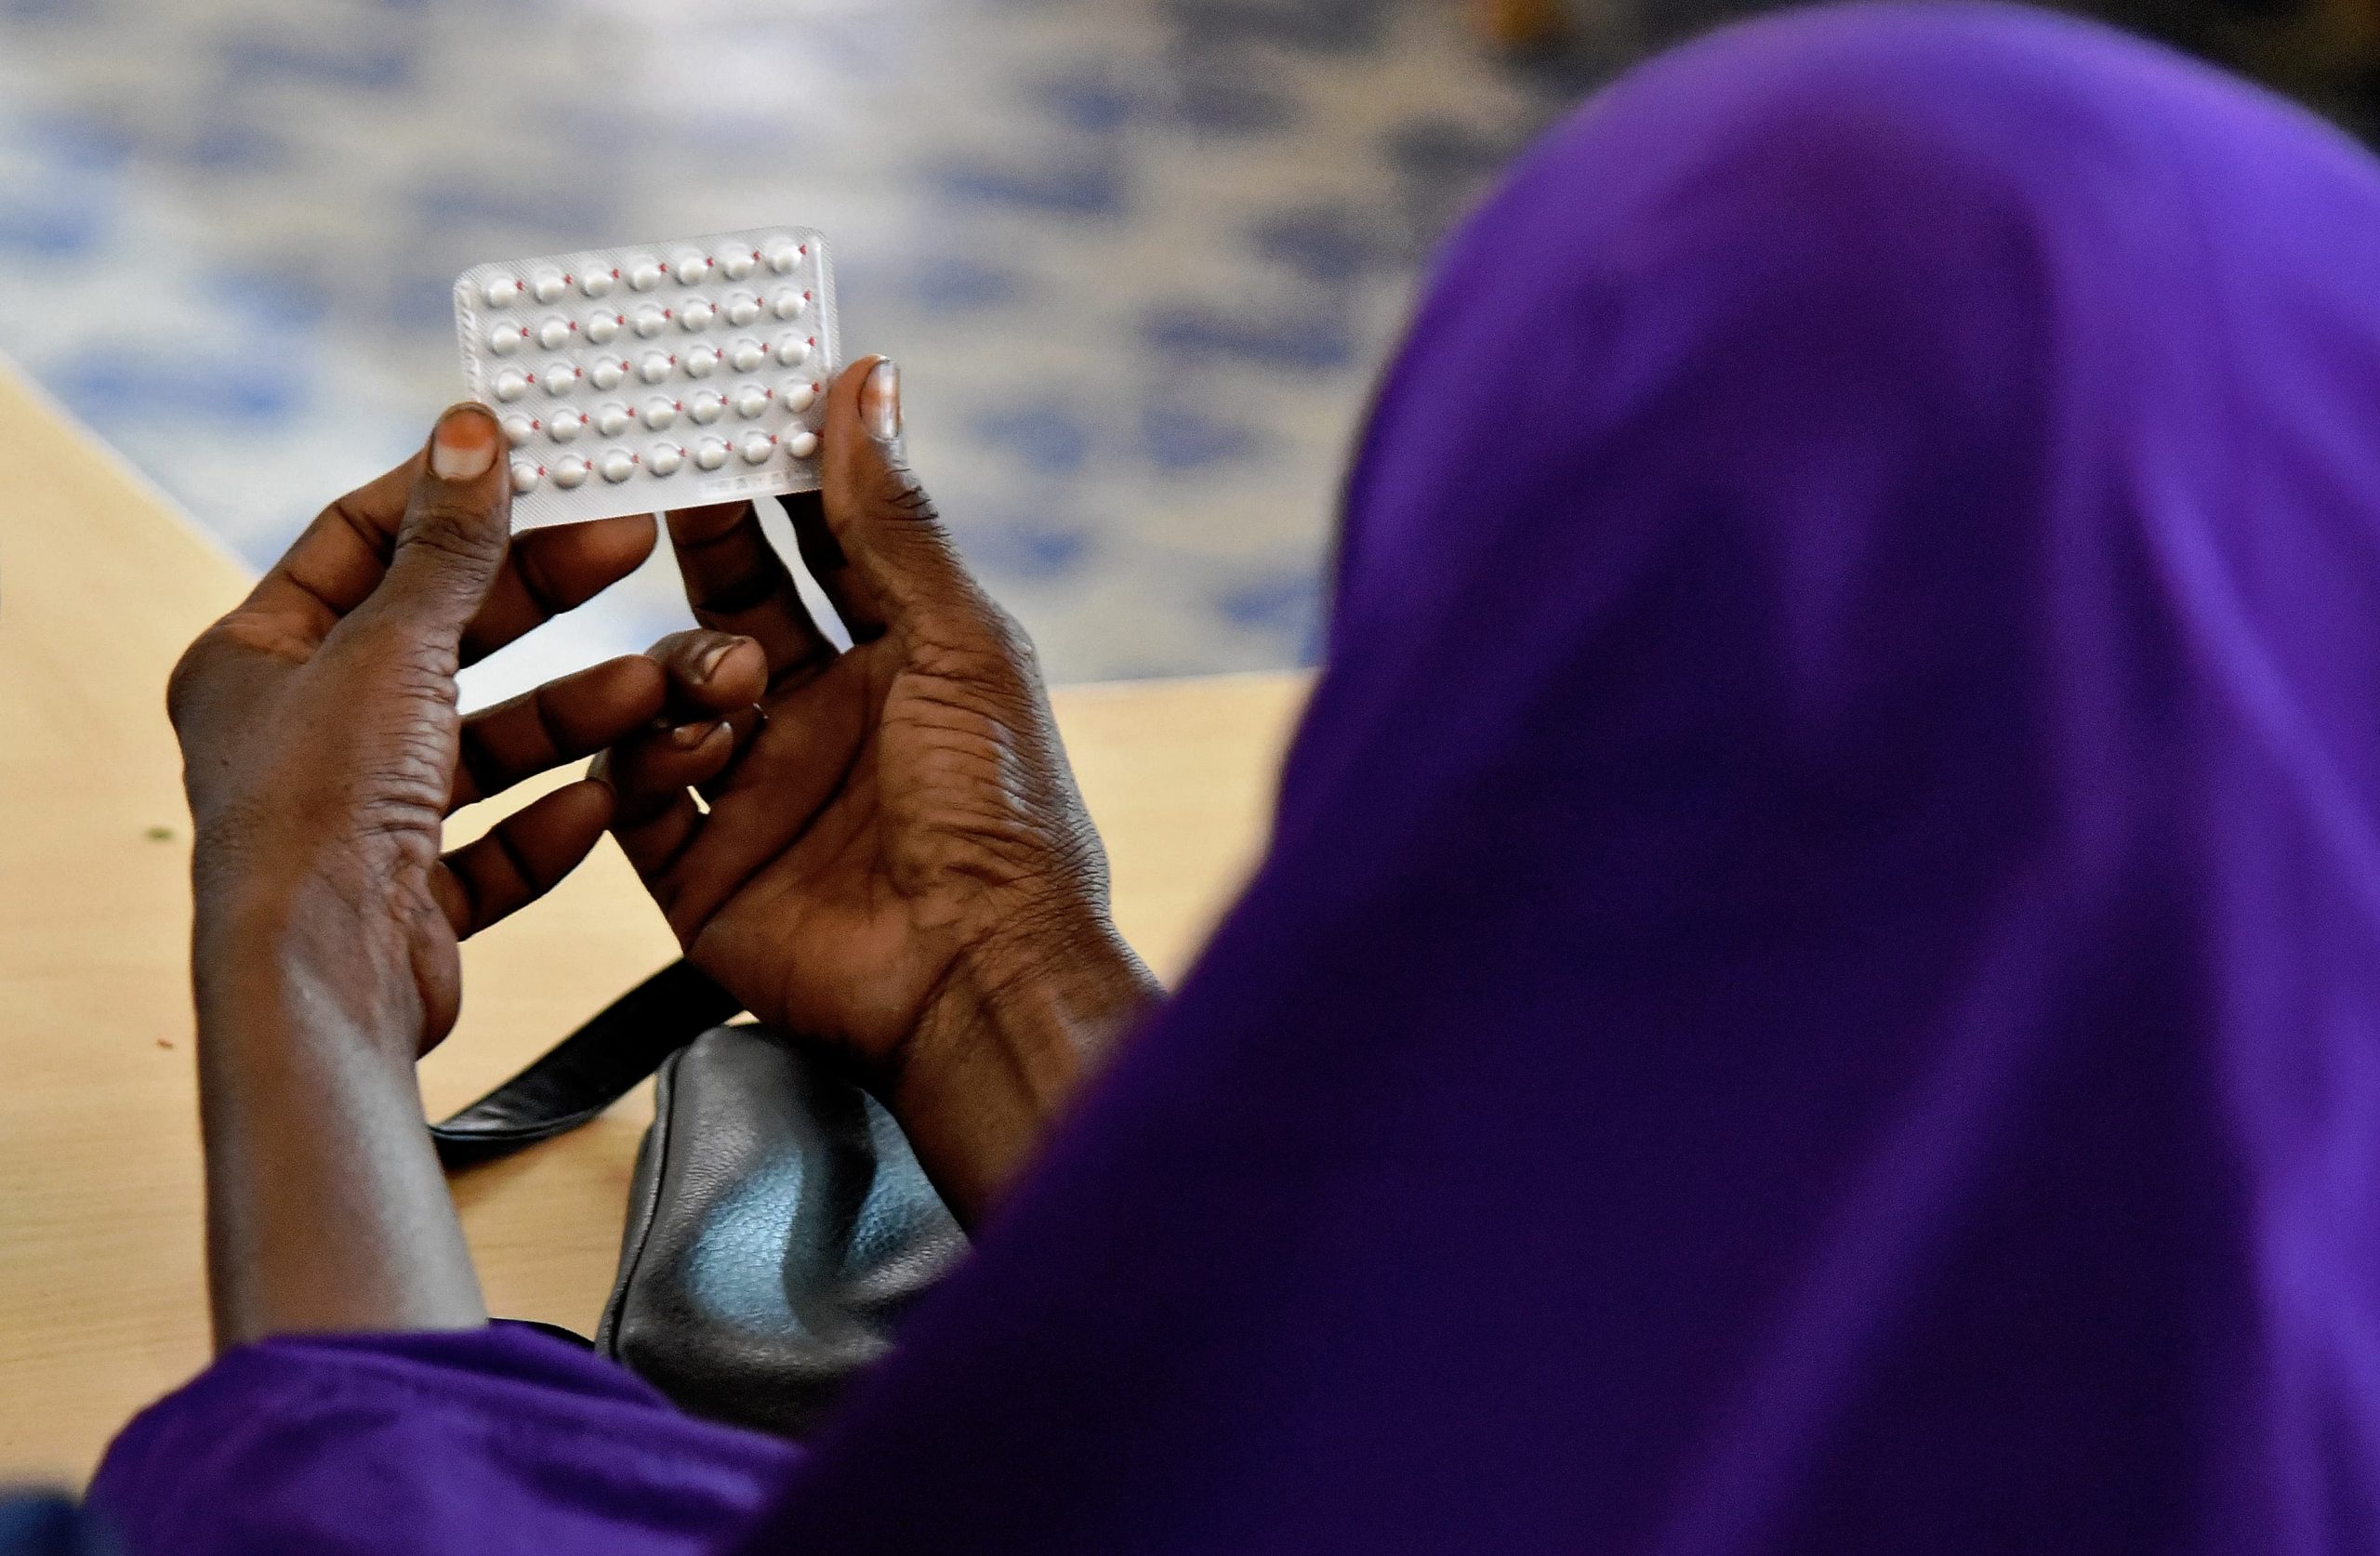 Le magazine du 08/10/2019 – Planification familiale au Niger: les pesanteurs sociales un frein à l’accès aux contraceptifs